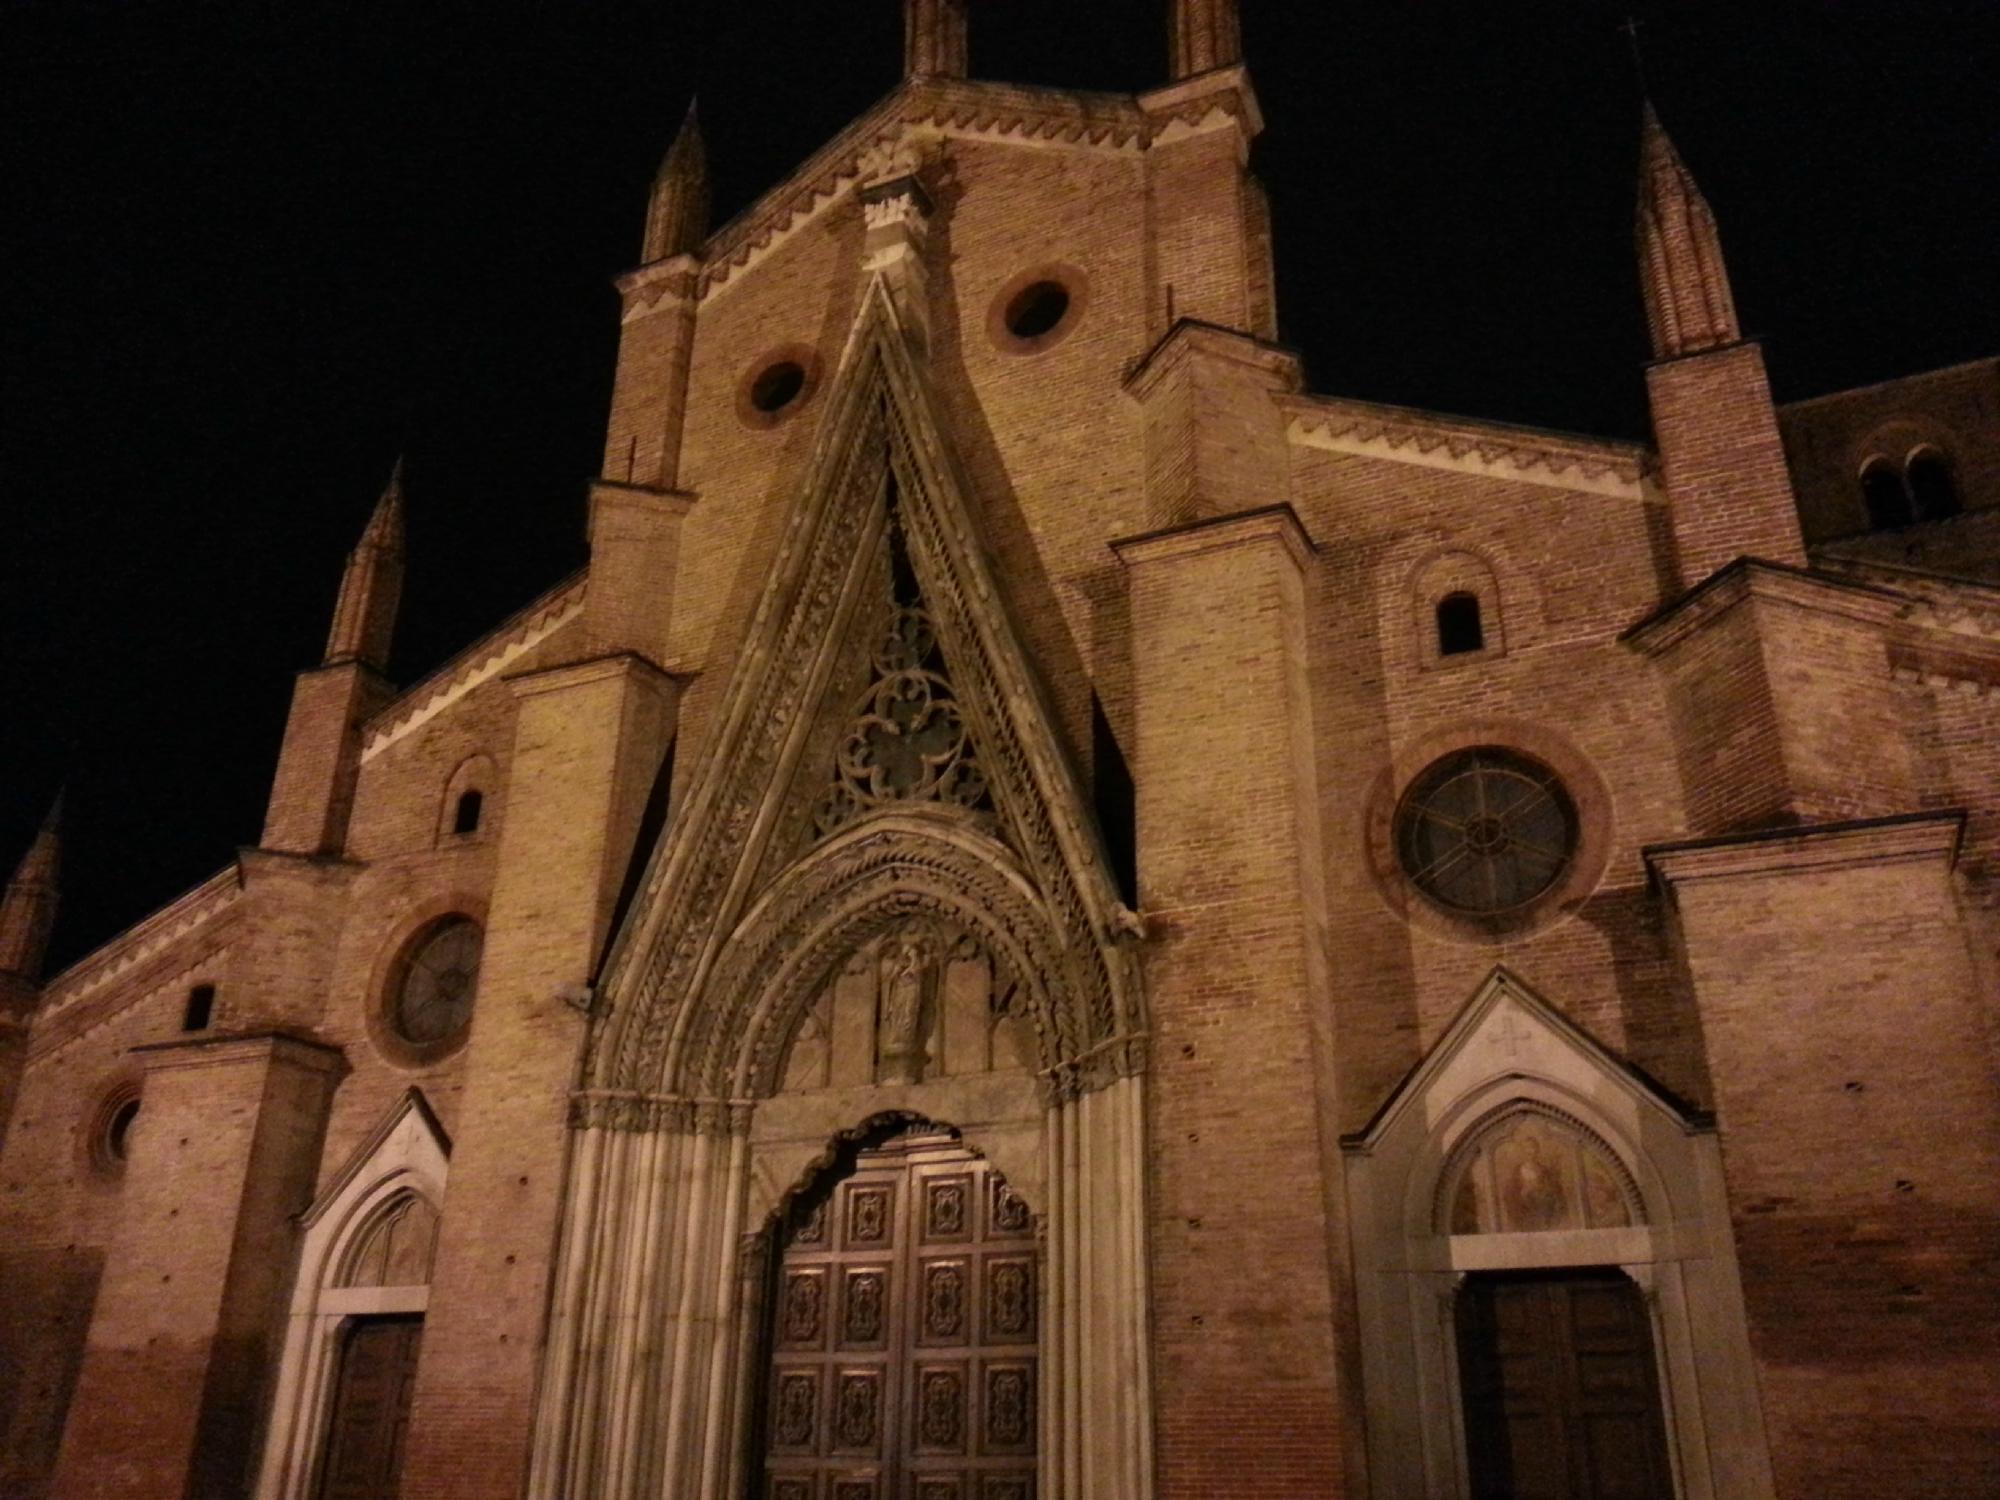 Duomo di Chieri